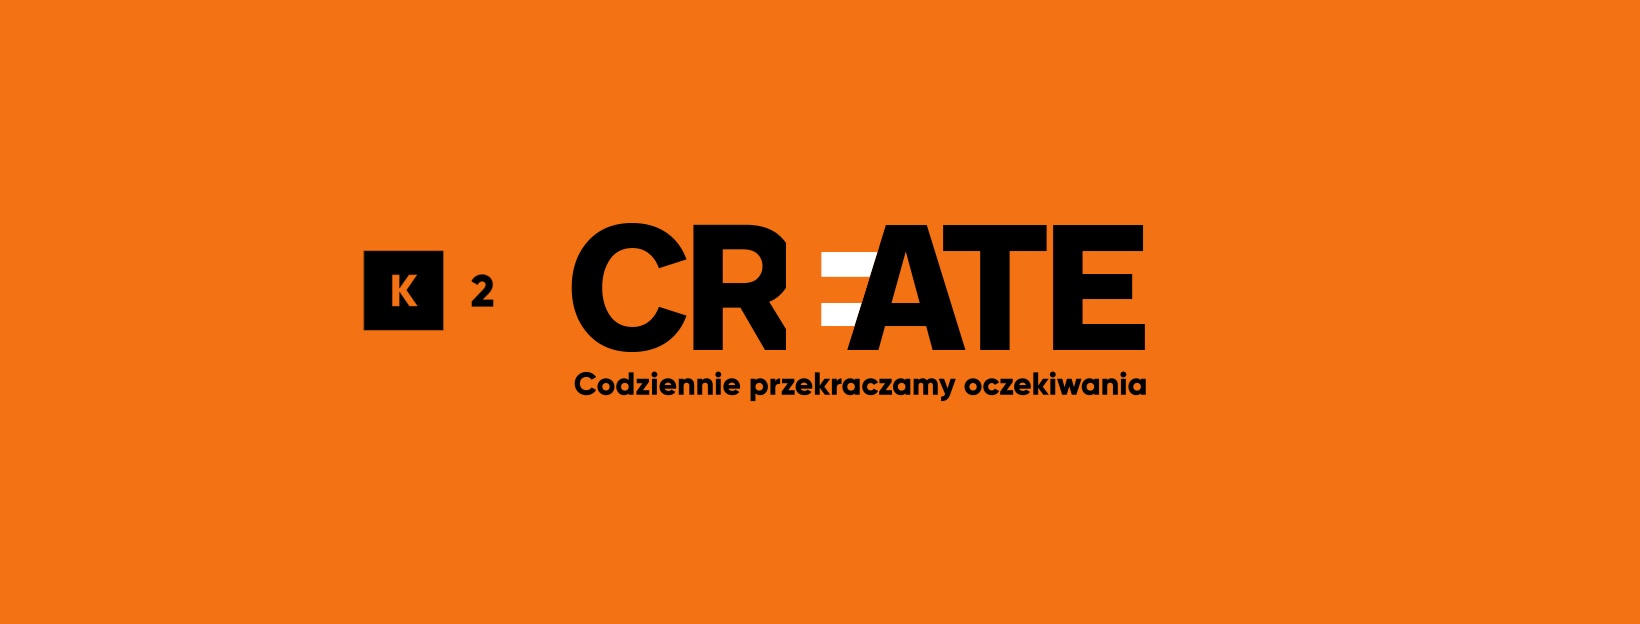 Logo agencji K2 po rebrandingu - na pomarańczowym tle napis czarnymi literami: K2 CREATE (pierwsze E białe). Codziennie przekraczamy oczekiwania